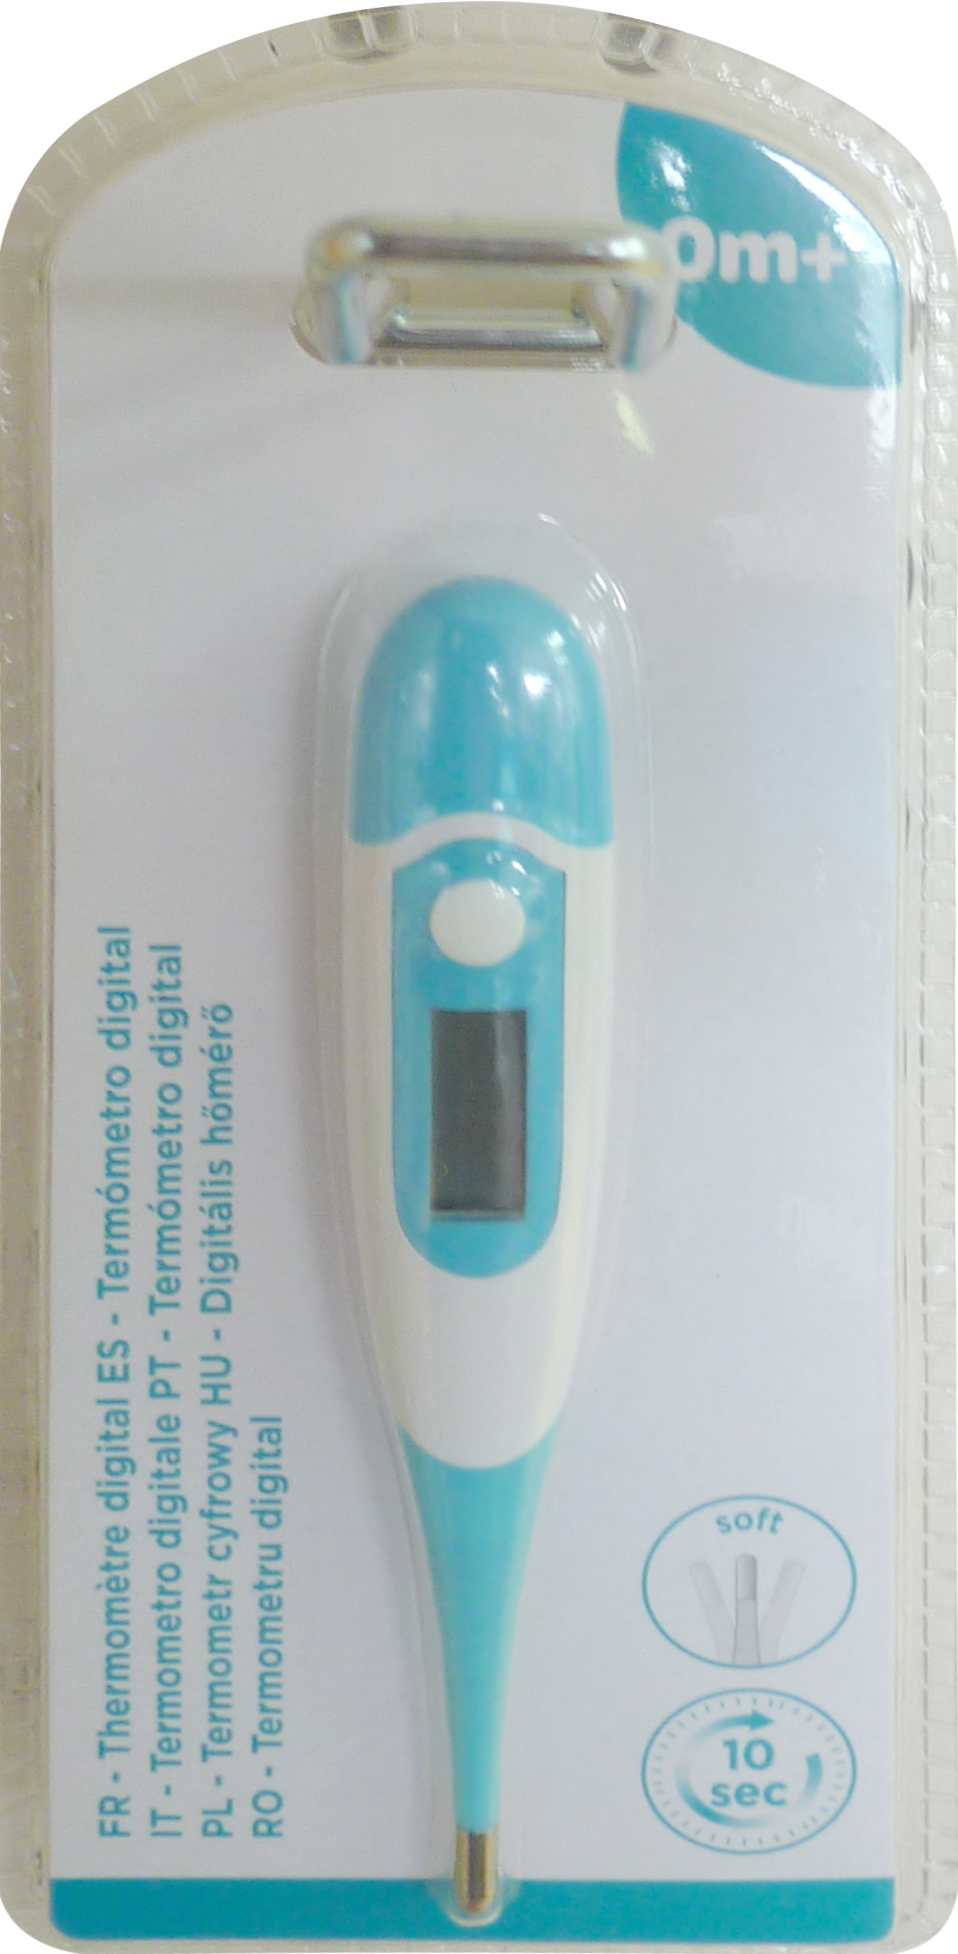 Thermomètre digital bébé embout flexible